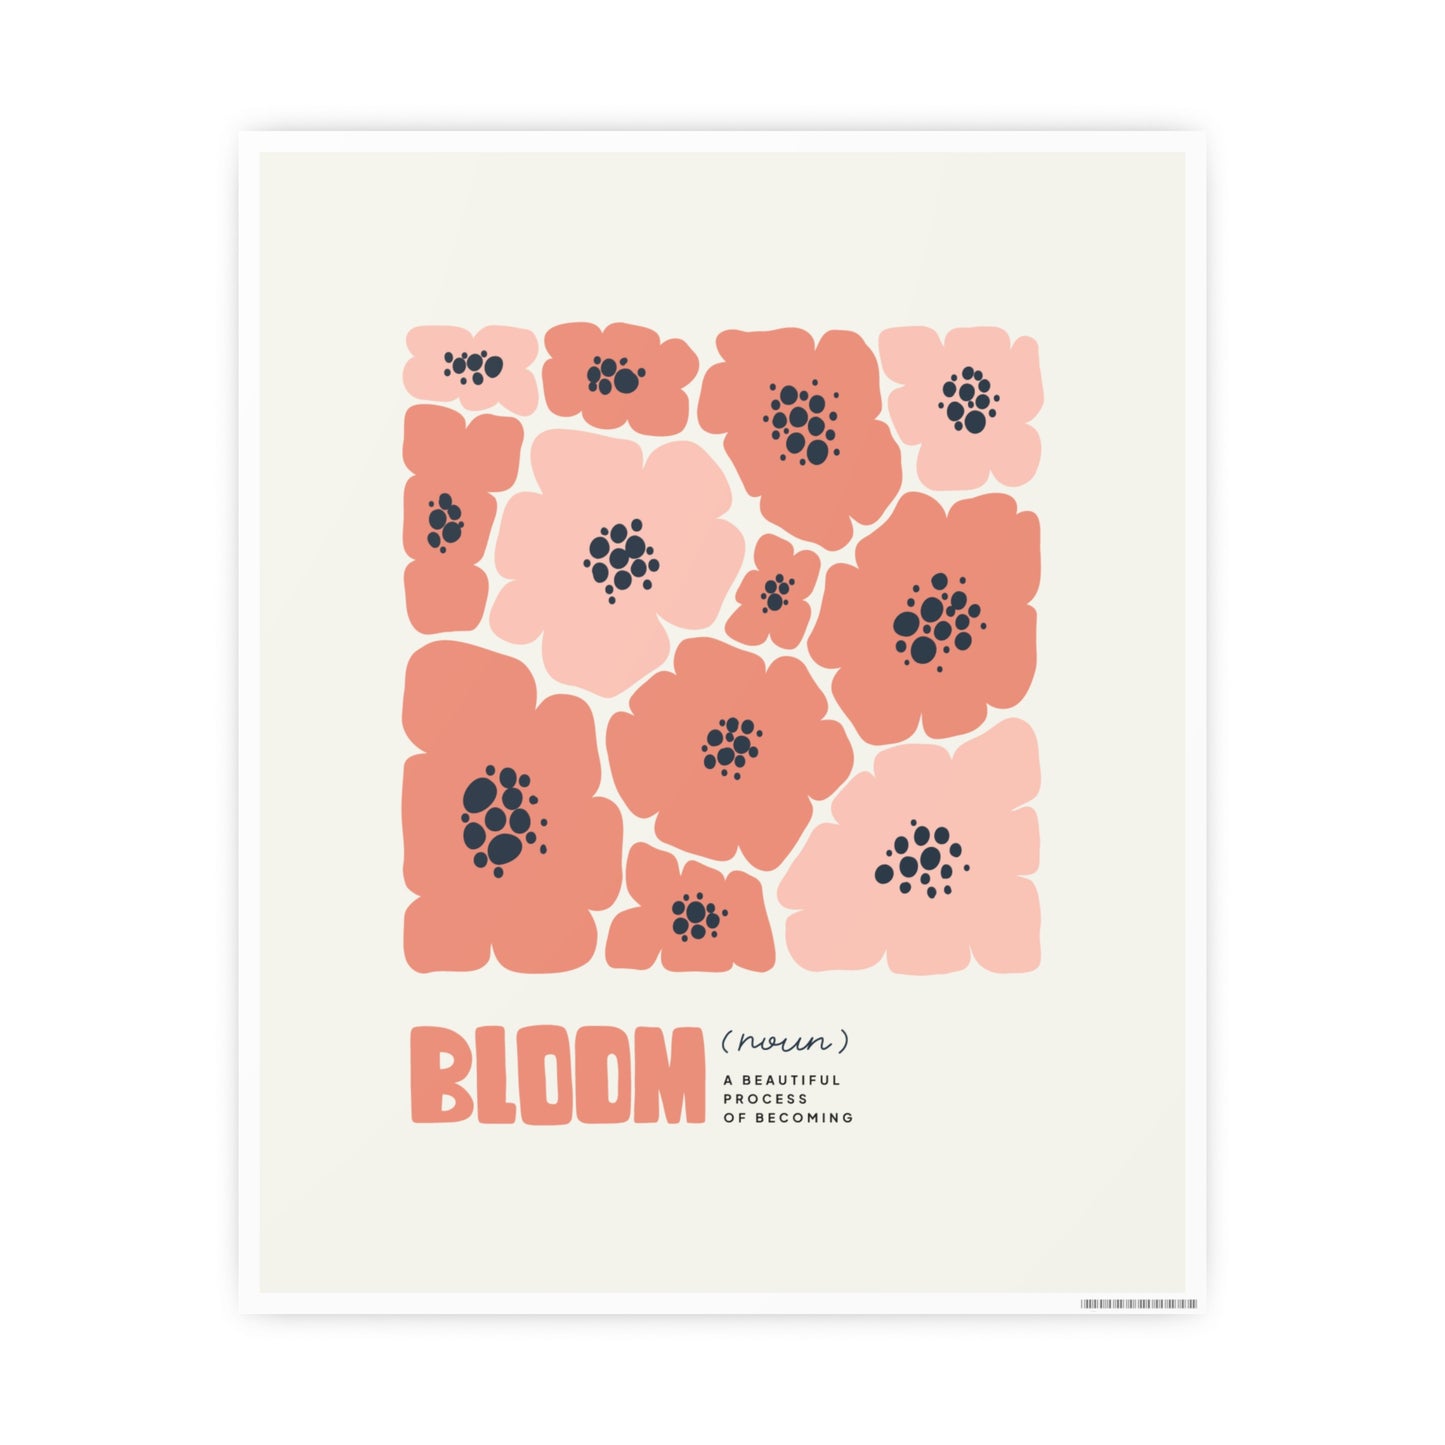 Bloom Noun Wall Decor